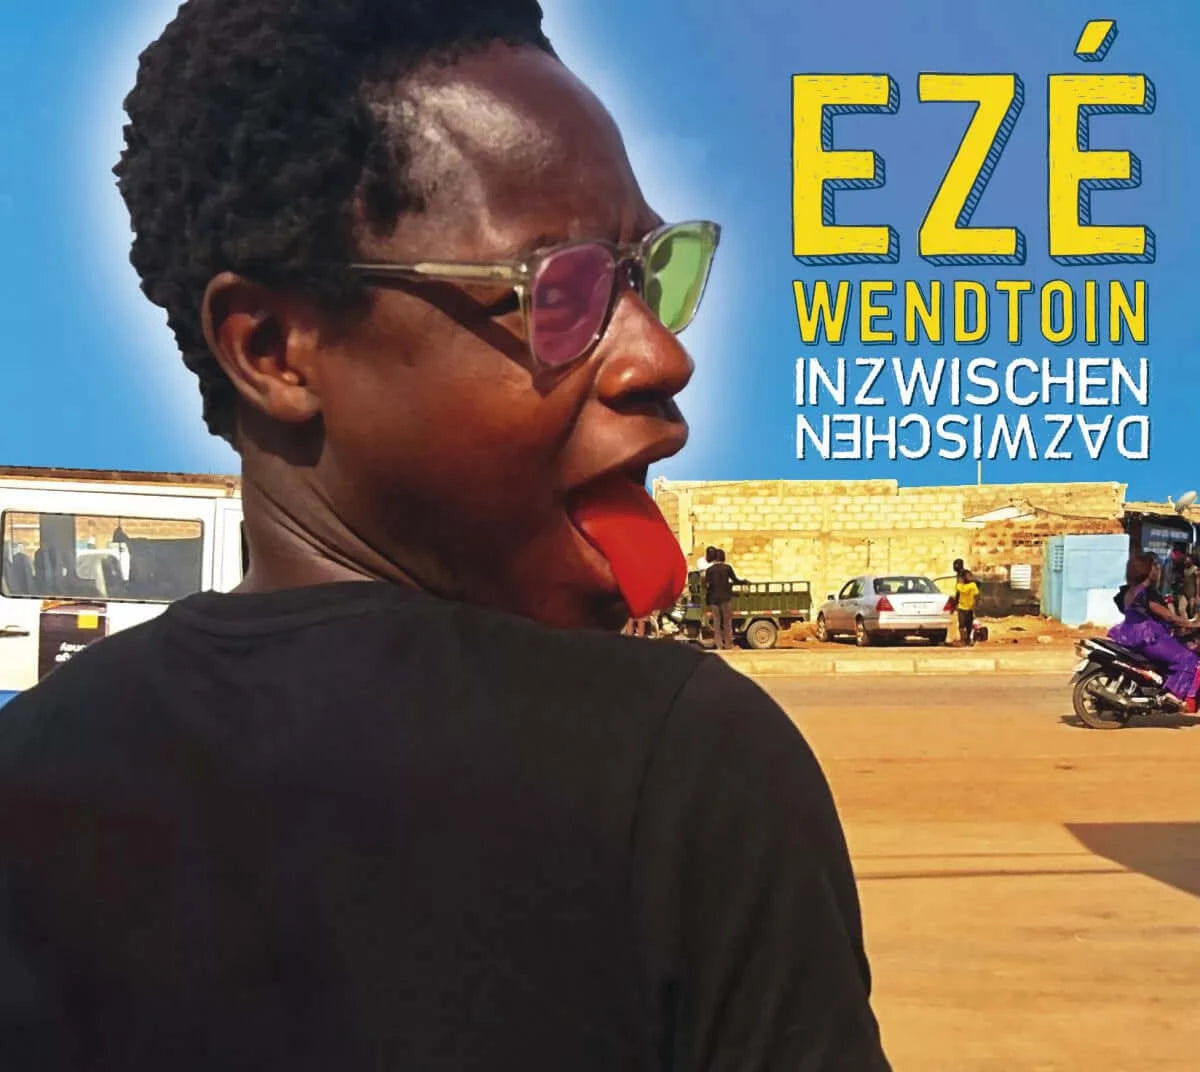 Ezé Wendtoin - Inzwischen Dazwischen (2019) | Doppel-Vinyl / CD im Digipak inkl. Download